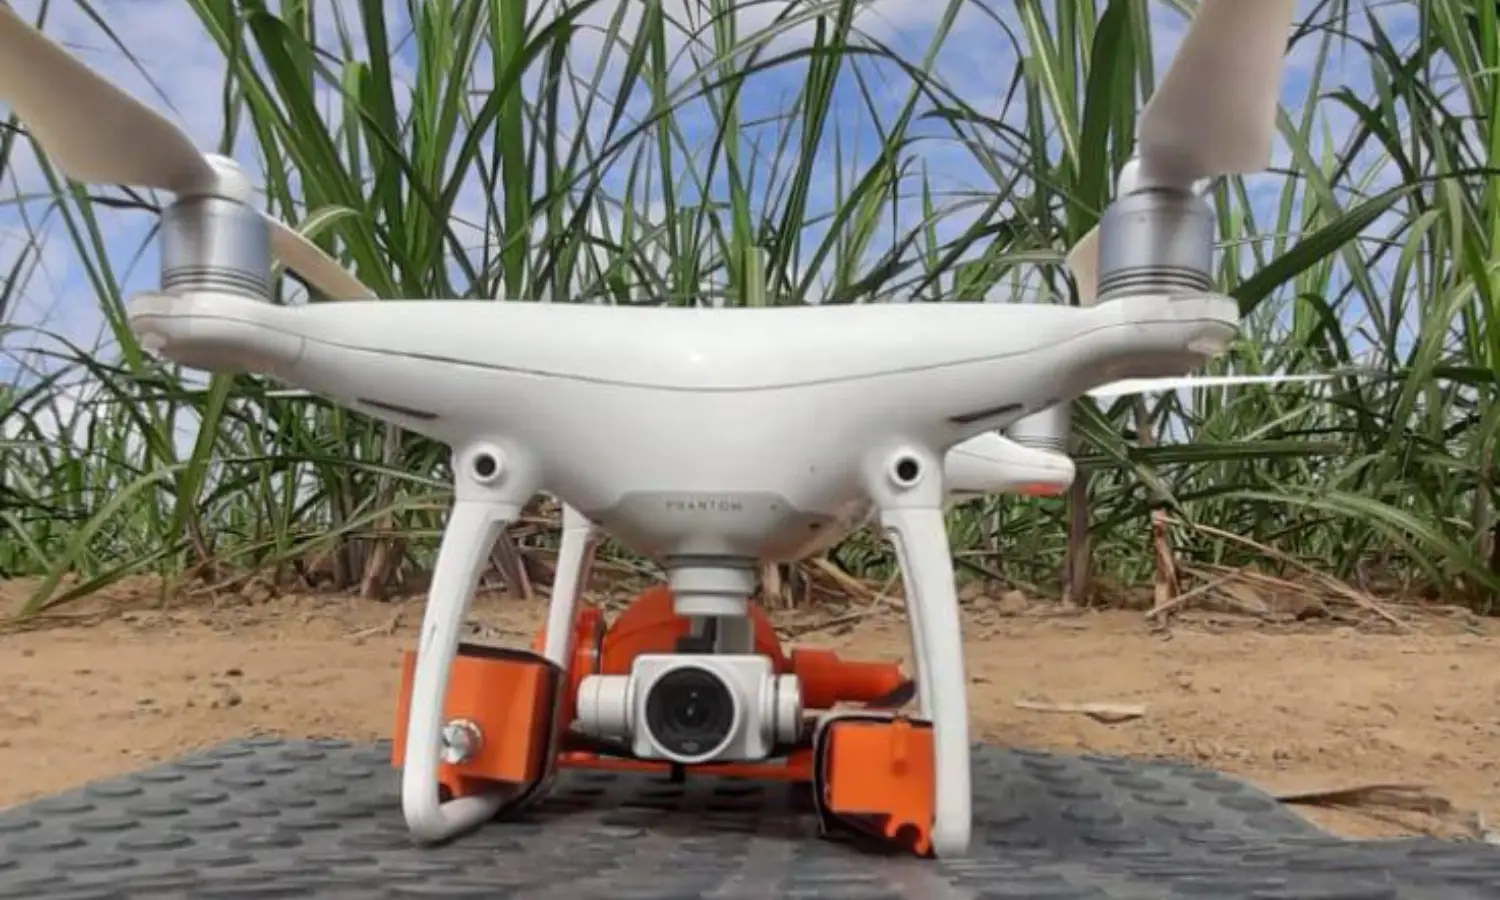 Drone para a aplicação de defensivos biológicos da dronefy